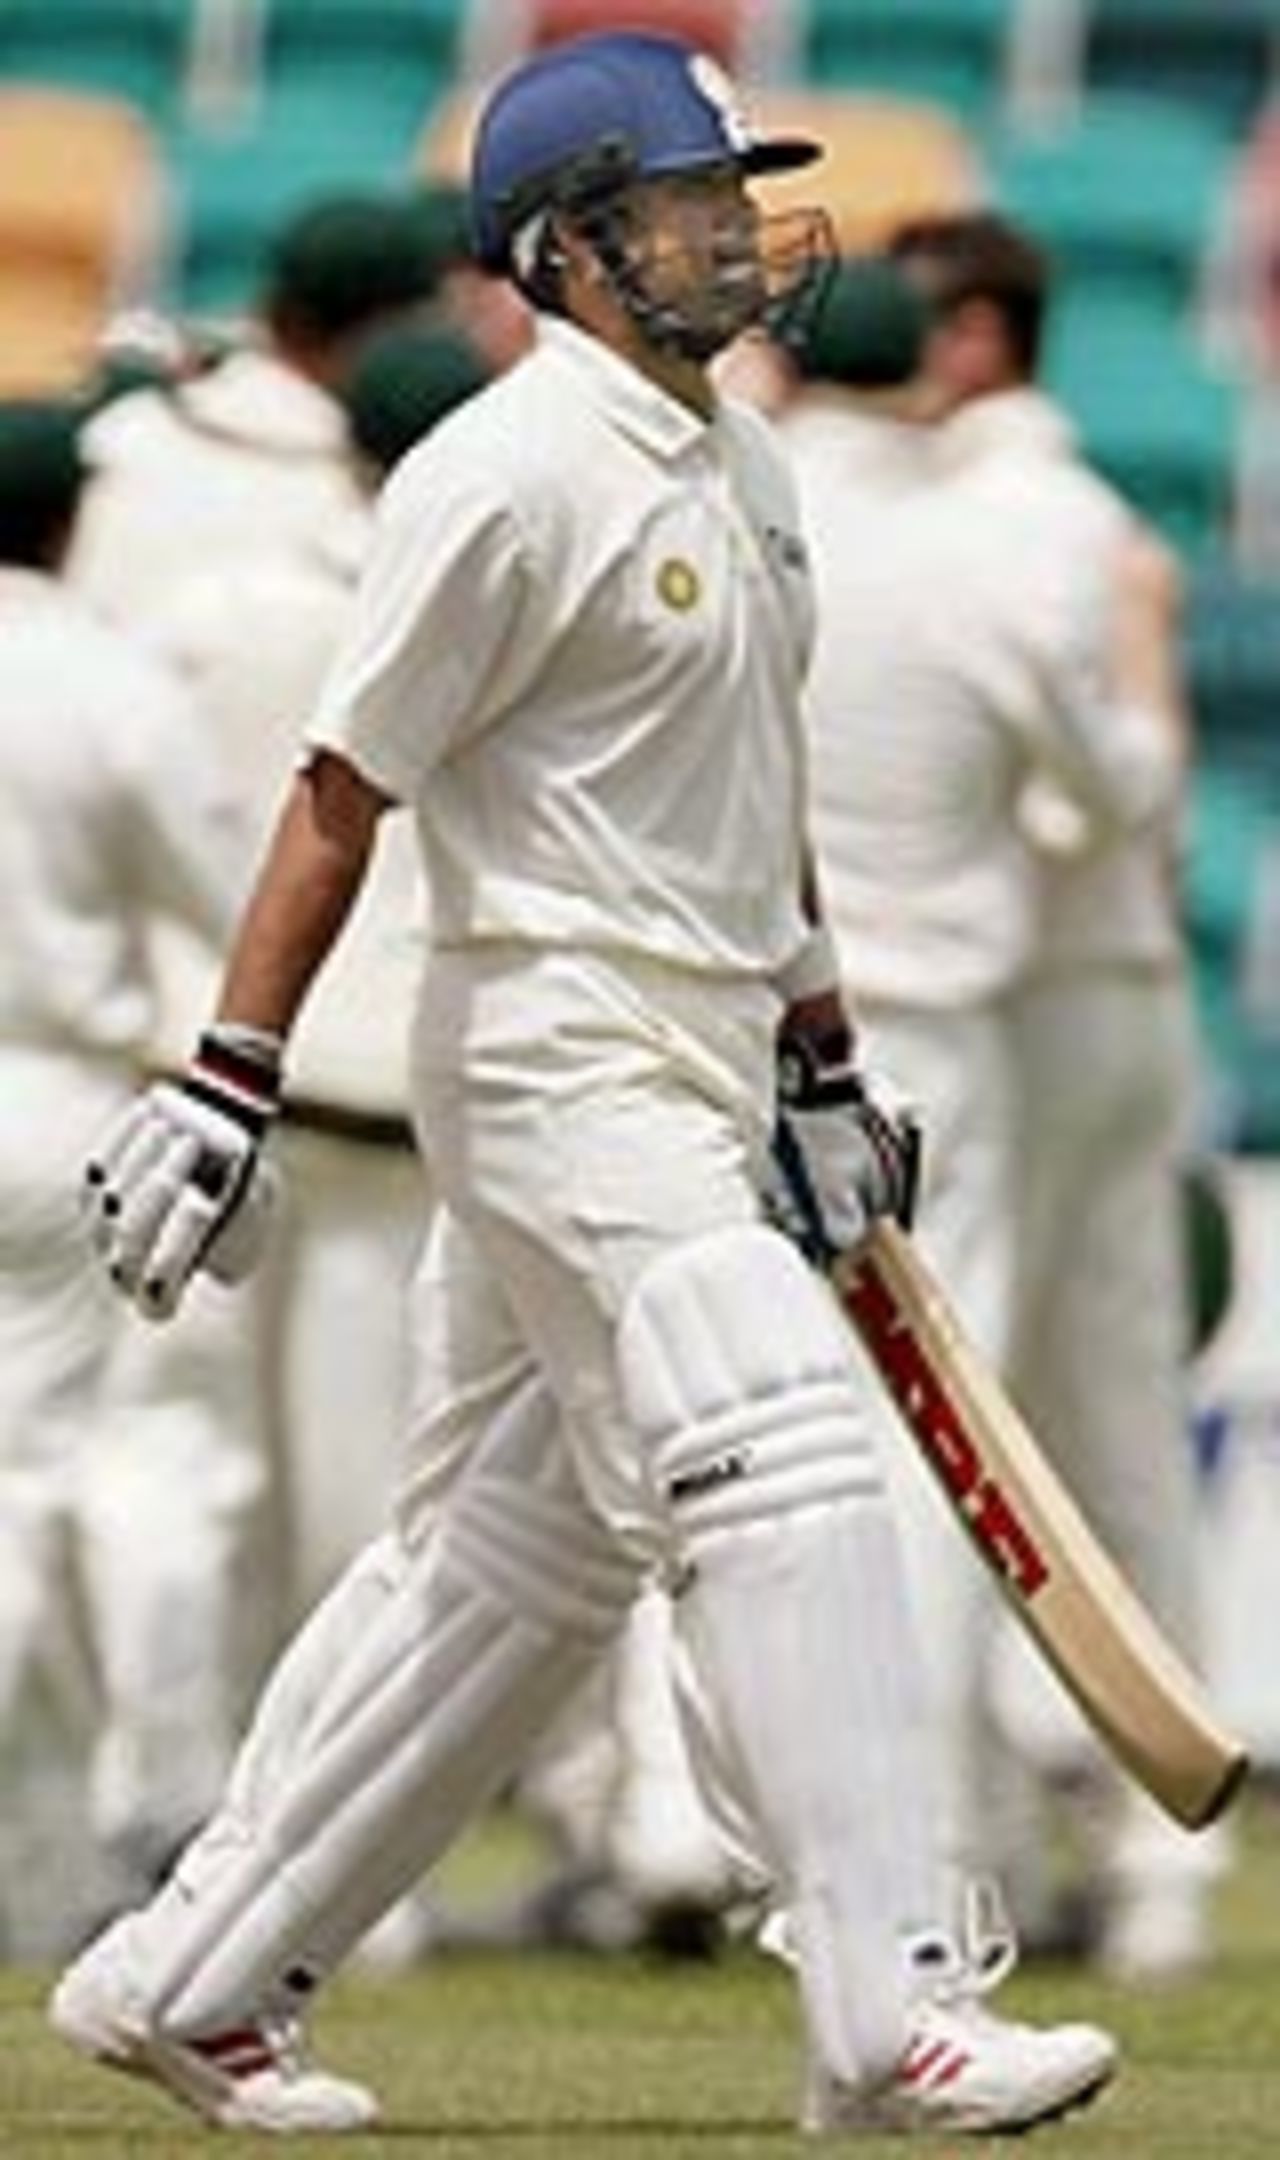 Sachin Tendulkar walks back after being dismissed, Australia A v Indians, tour game, Hobart, 2nd day, December 20, 2003